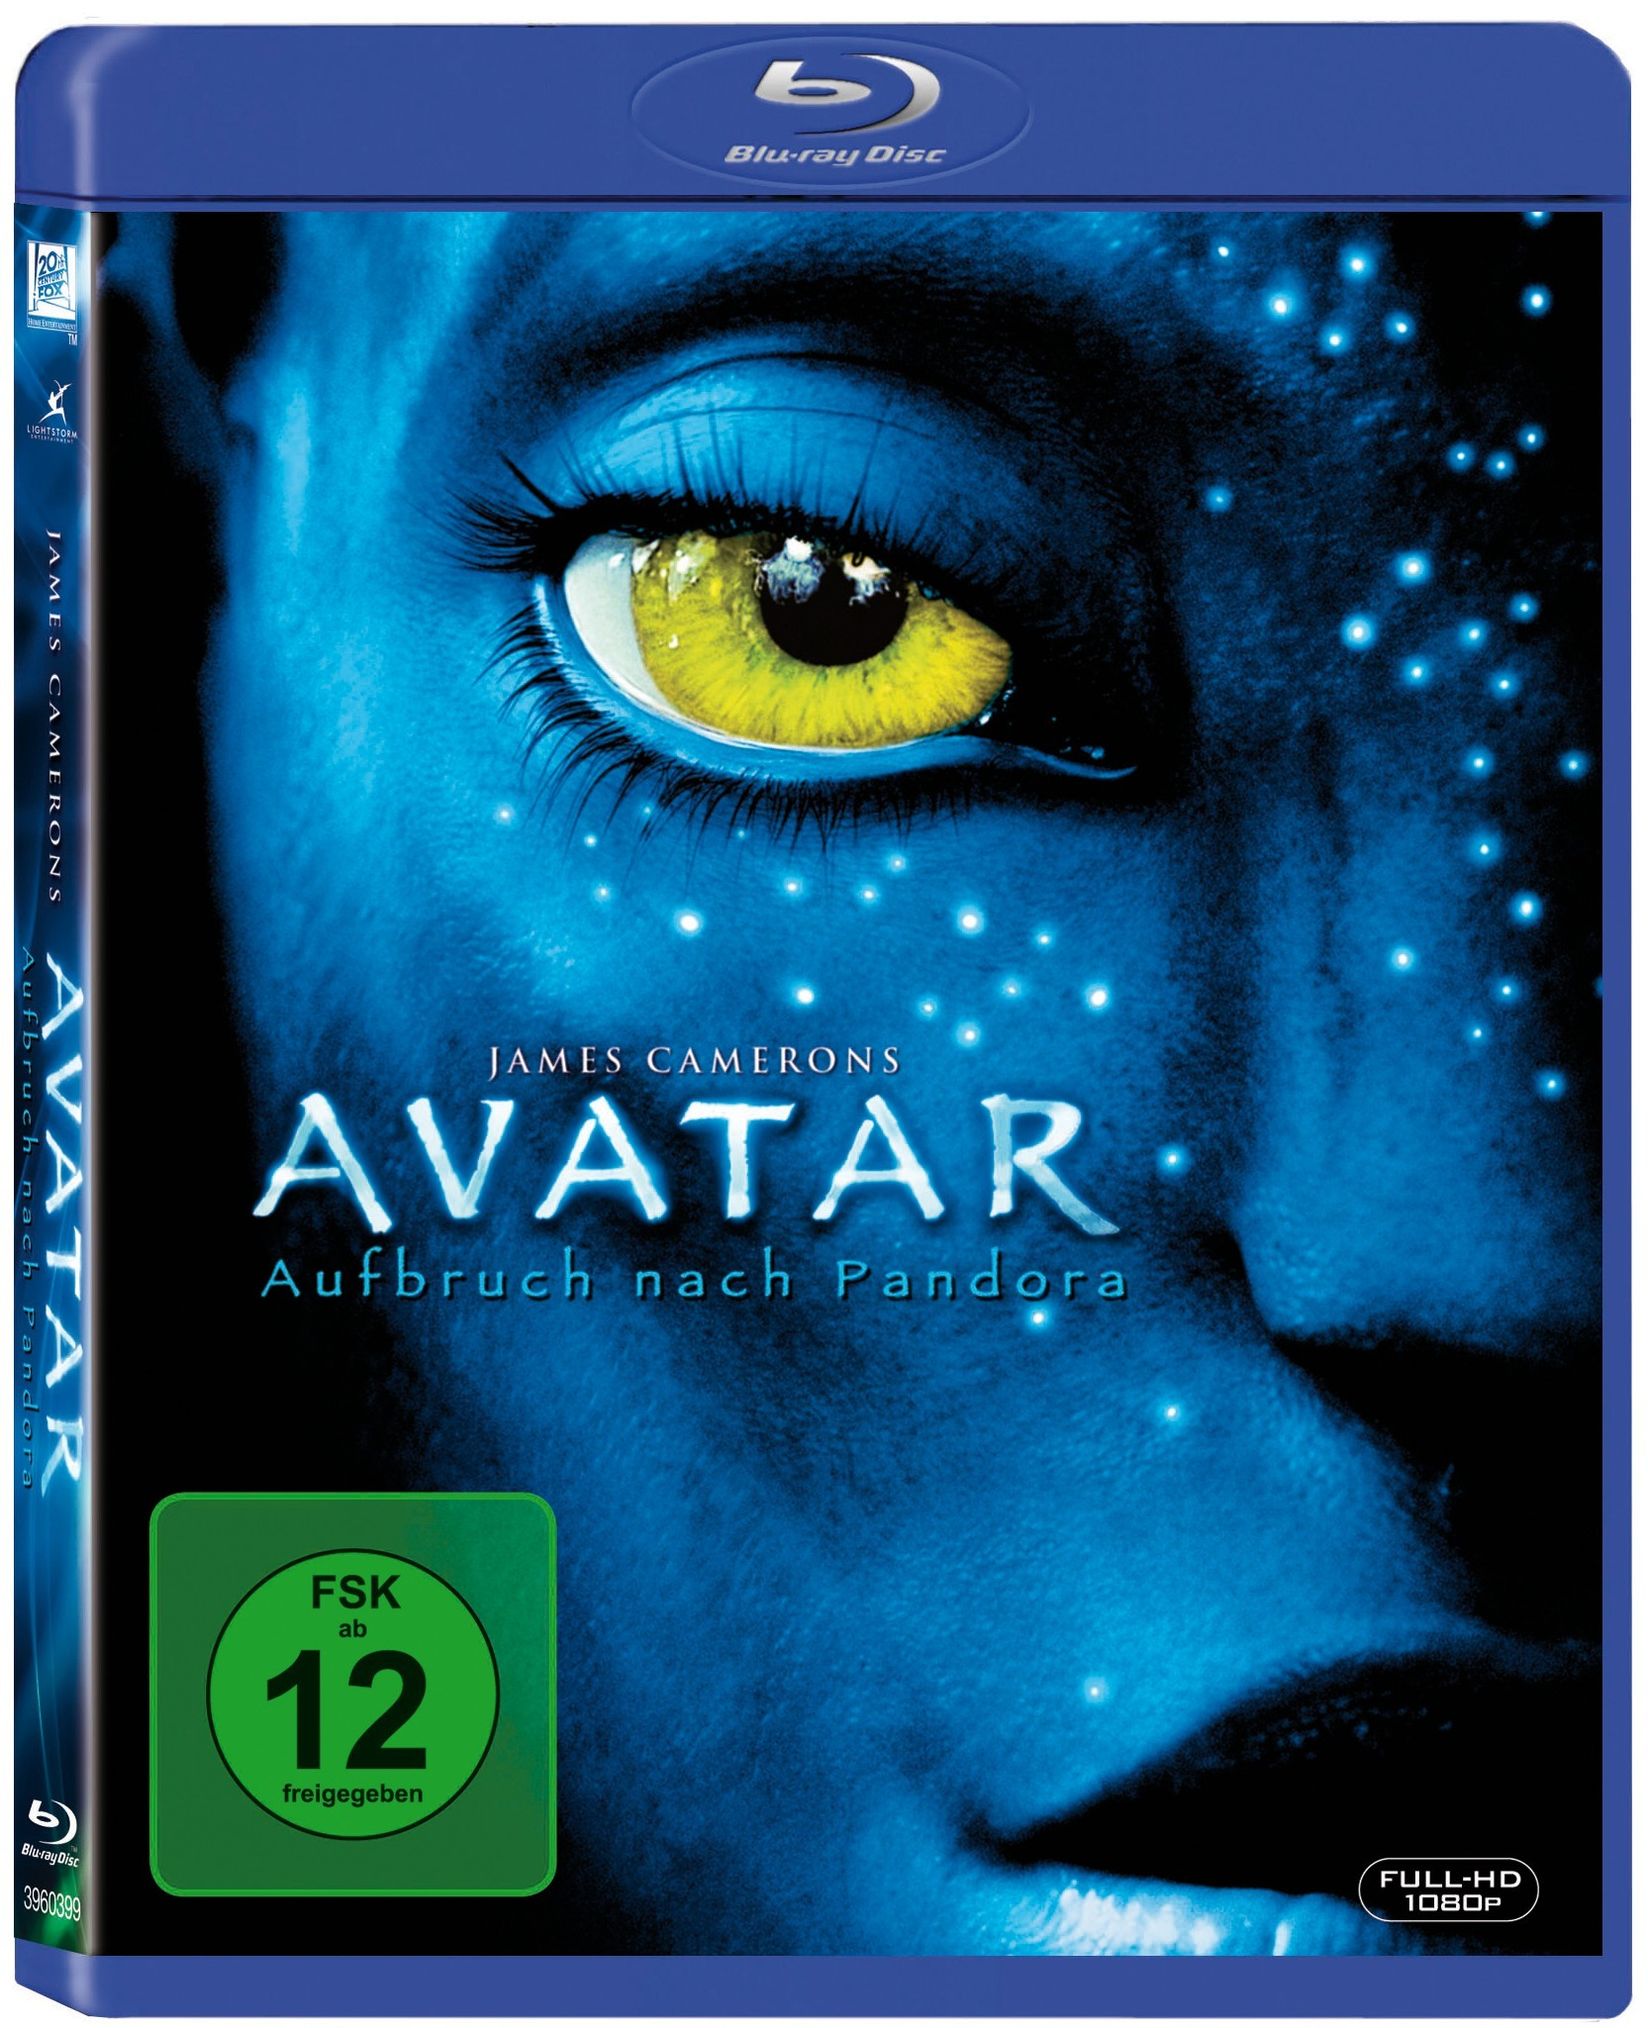 Avatar - Aufbruch nach Pandora Blu-ray bei Weltbild.de kaufen